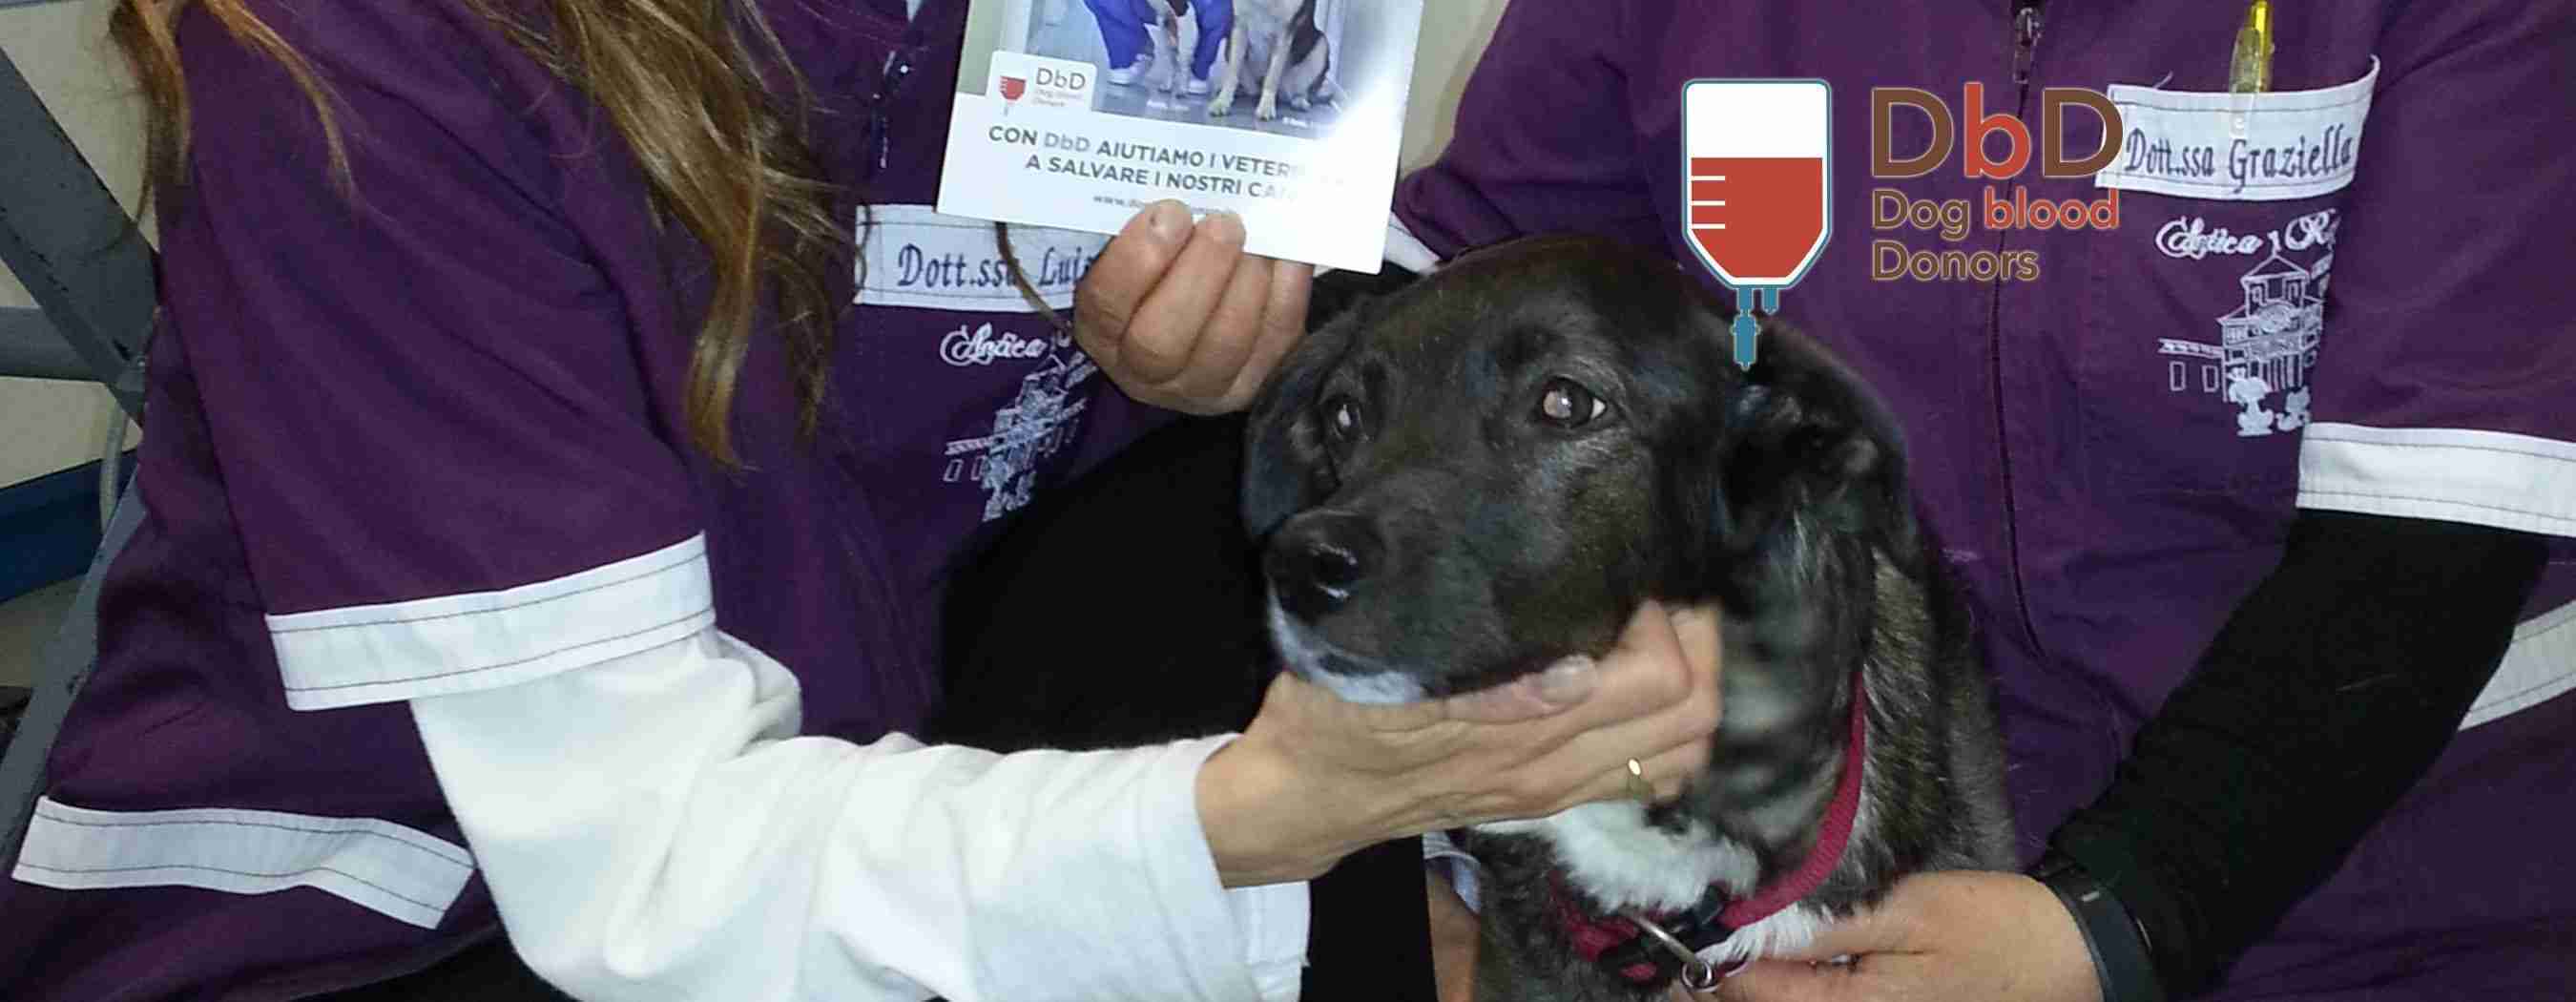 Donazione di sangue: salvato il secondo cane grazie a DbD!